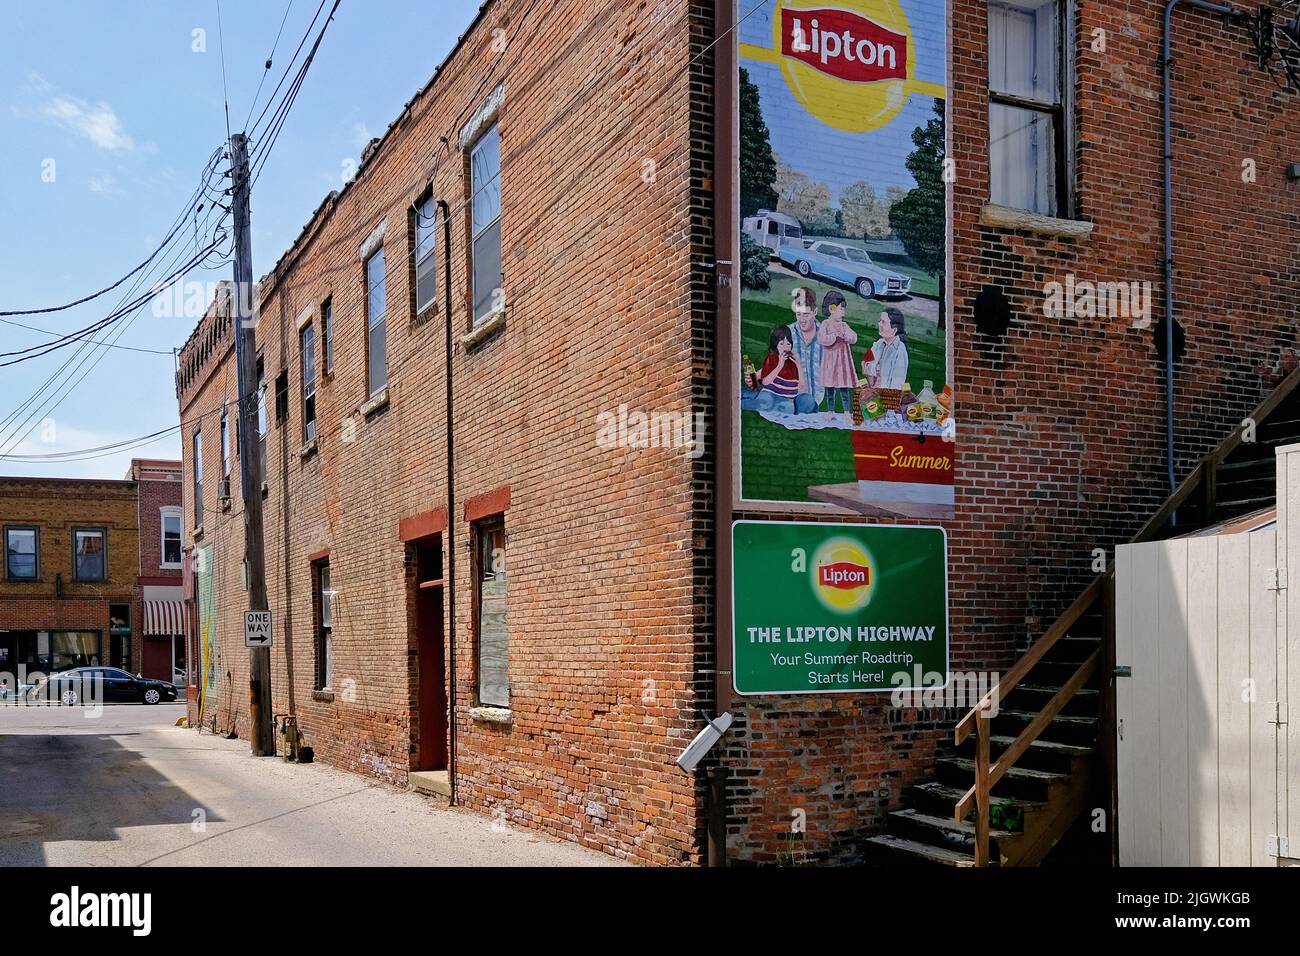 Lipton Mural nel centro storico di Pontiac, Illinois, Stati Uniti d'America Foto Stock